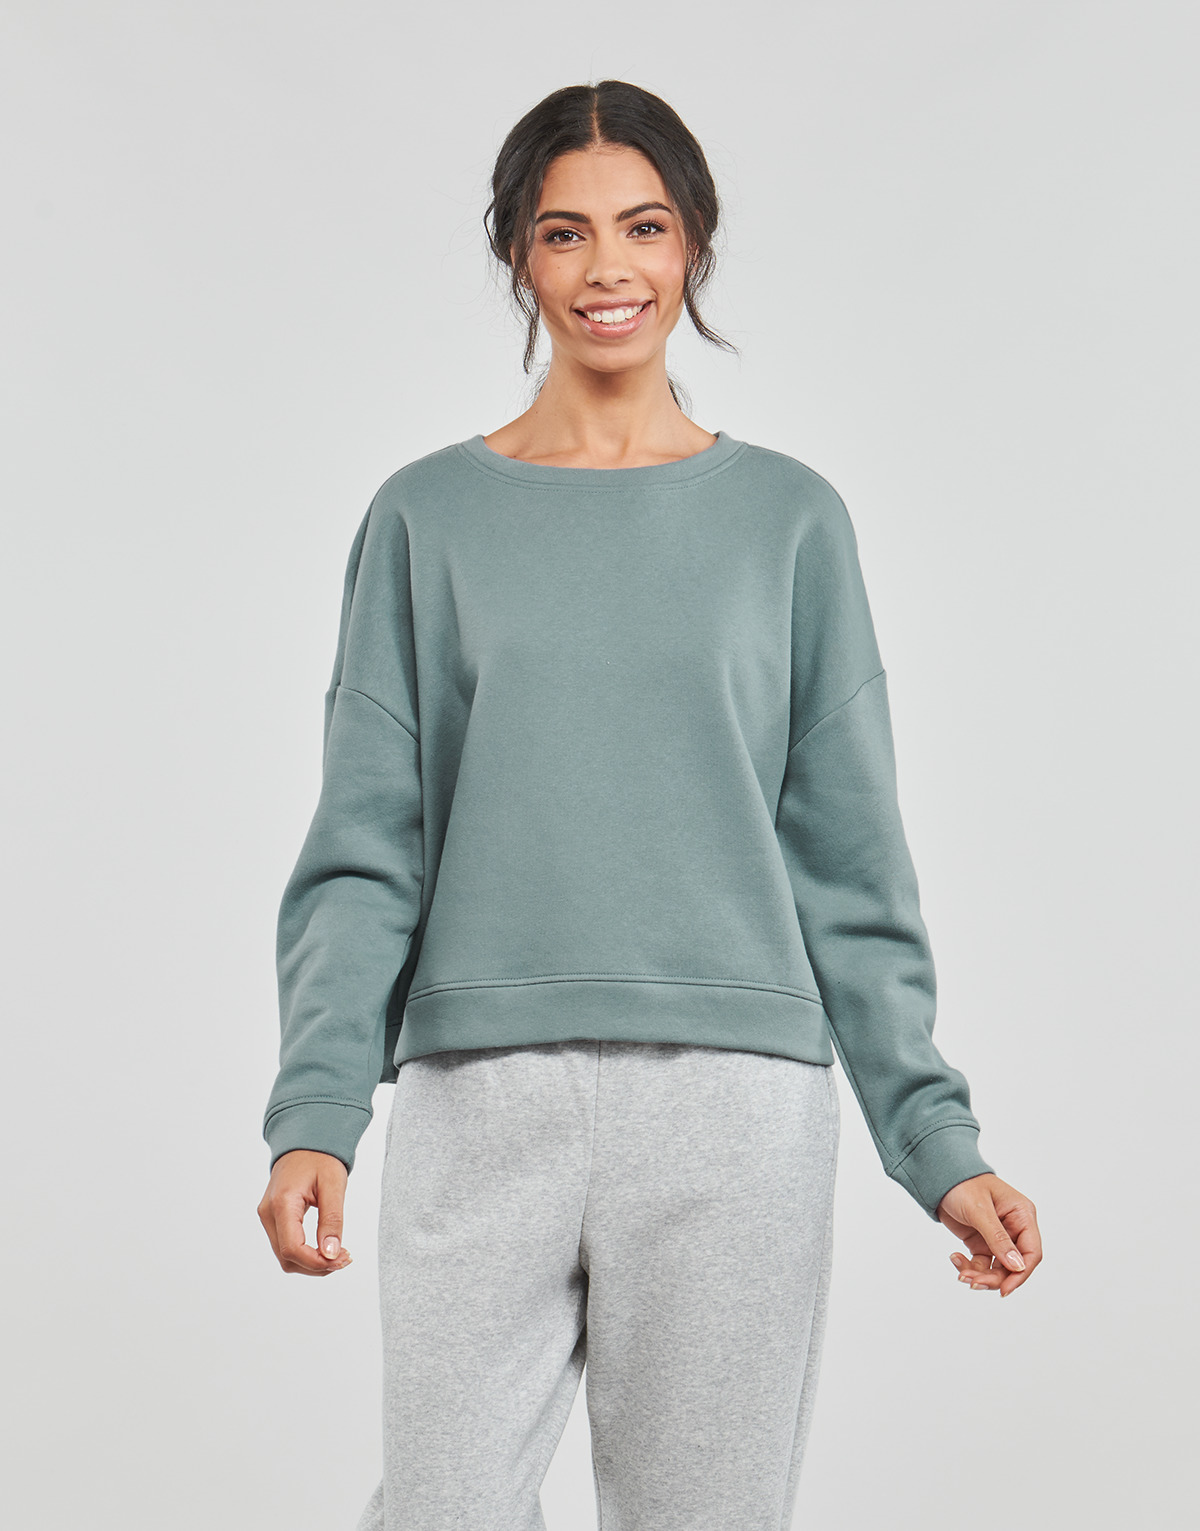 Kleidung Damen Sweatshirts Pieces PCCHILLI LS SWEAT Grün